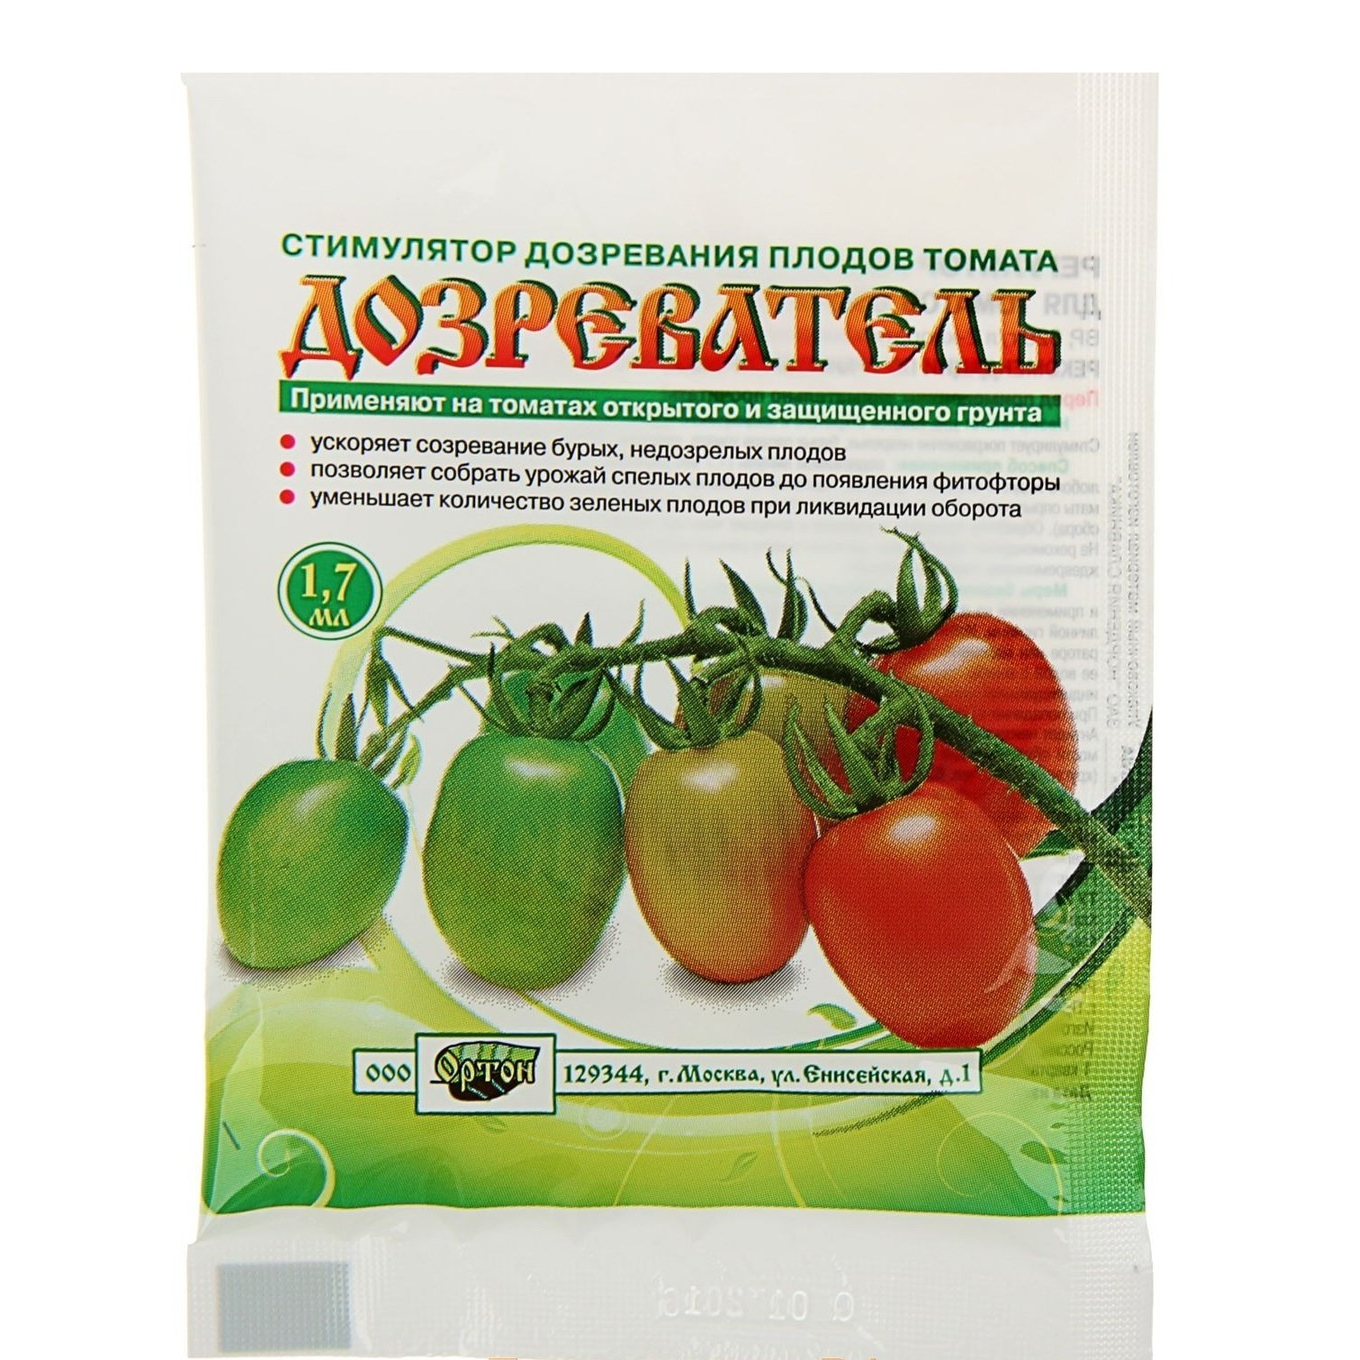 Чем подкормить помидоры во время плодоношения: подкормки для быстрого роста и созревания плодов, как удобрять томаты, для быстрого налива и увеличения сладости